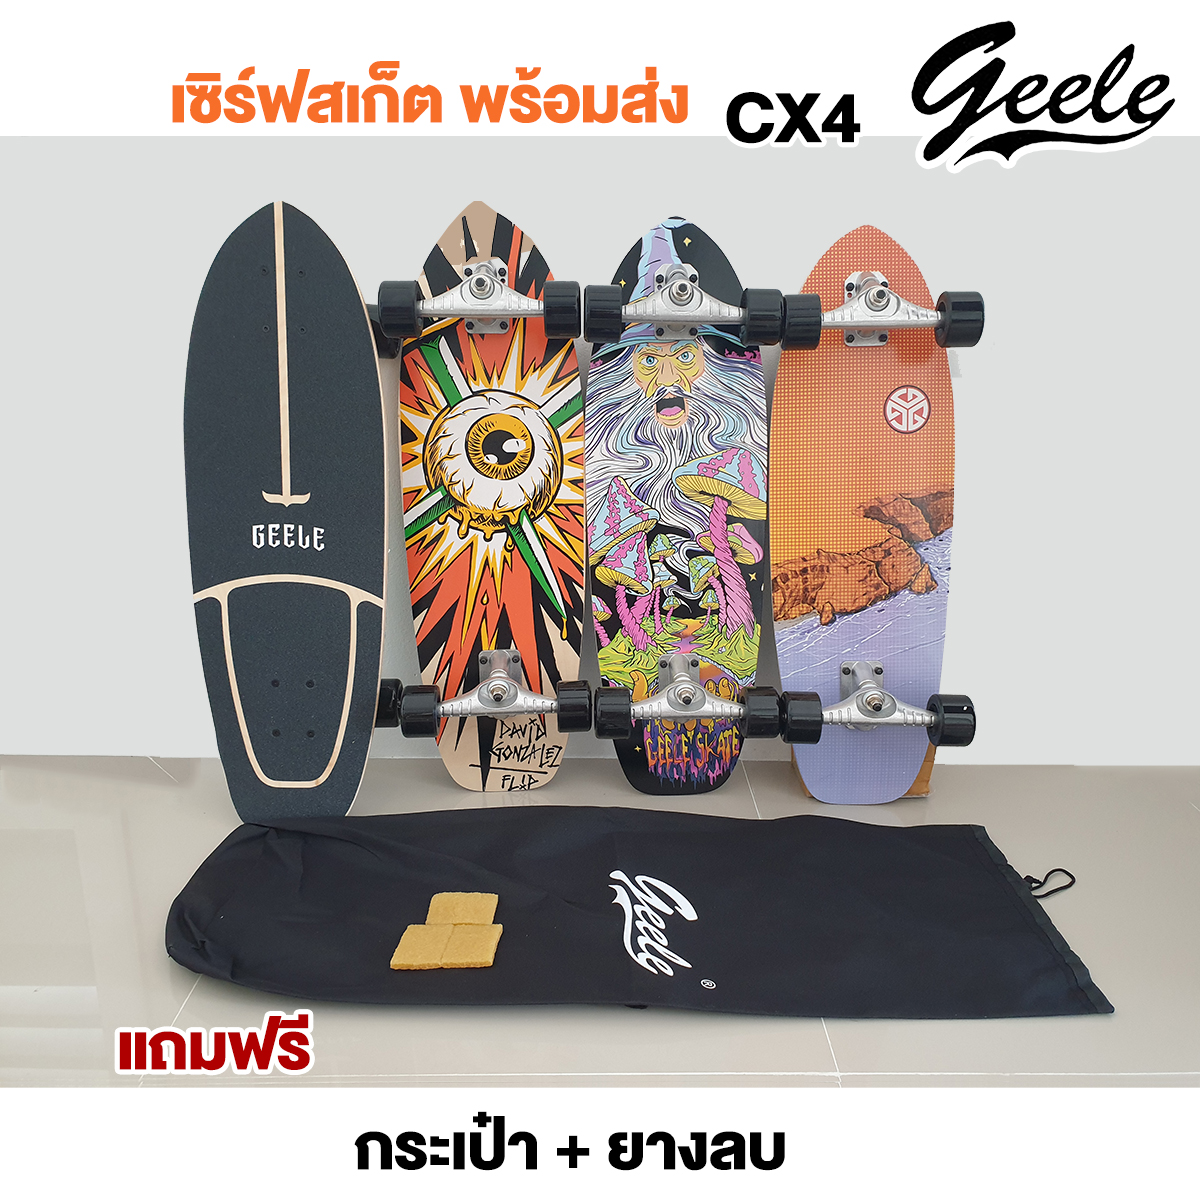 พร้อมส่ง Geele เซิร์ฟสเก็ต Surf Skate Board Cx4 แถมฟรีกระเป๋าและยางลบ